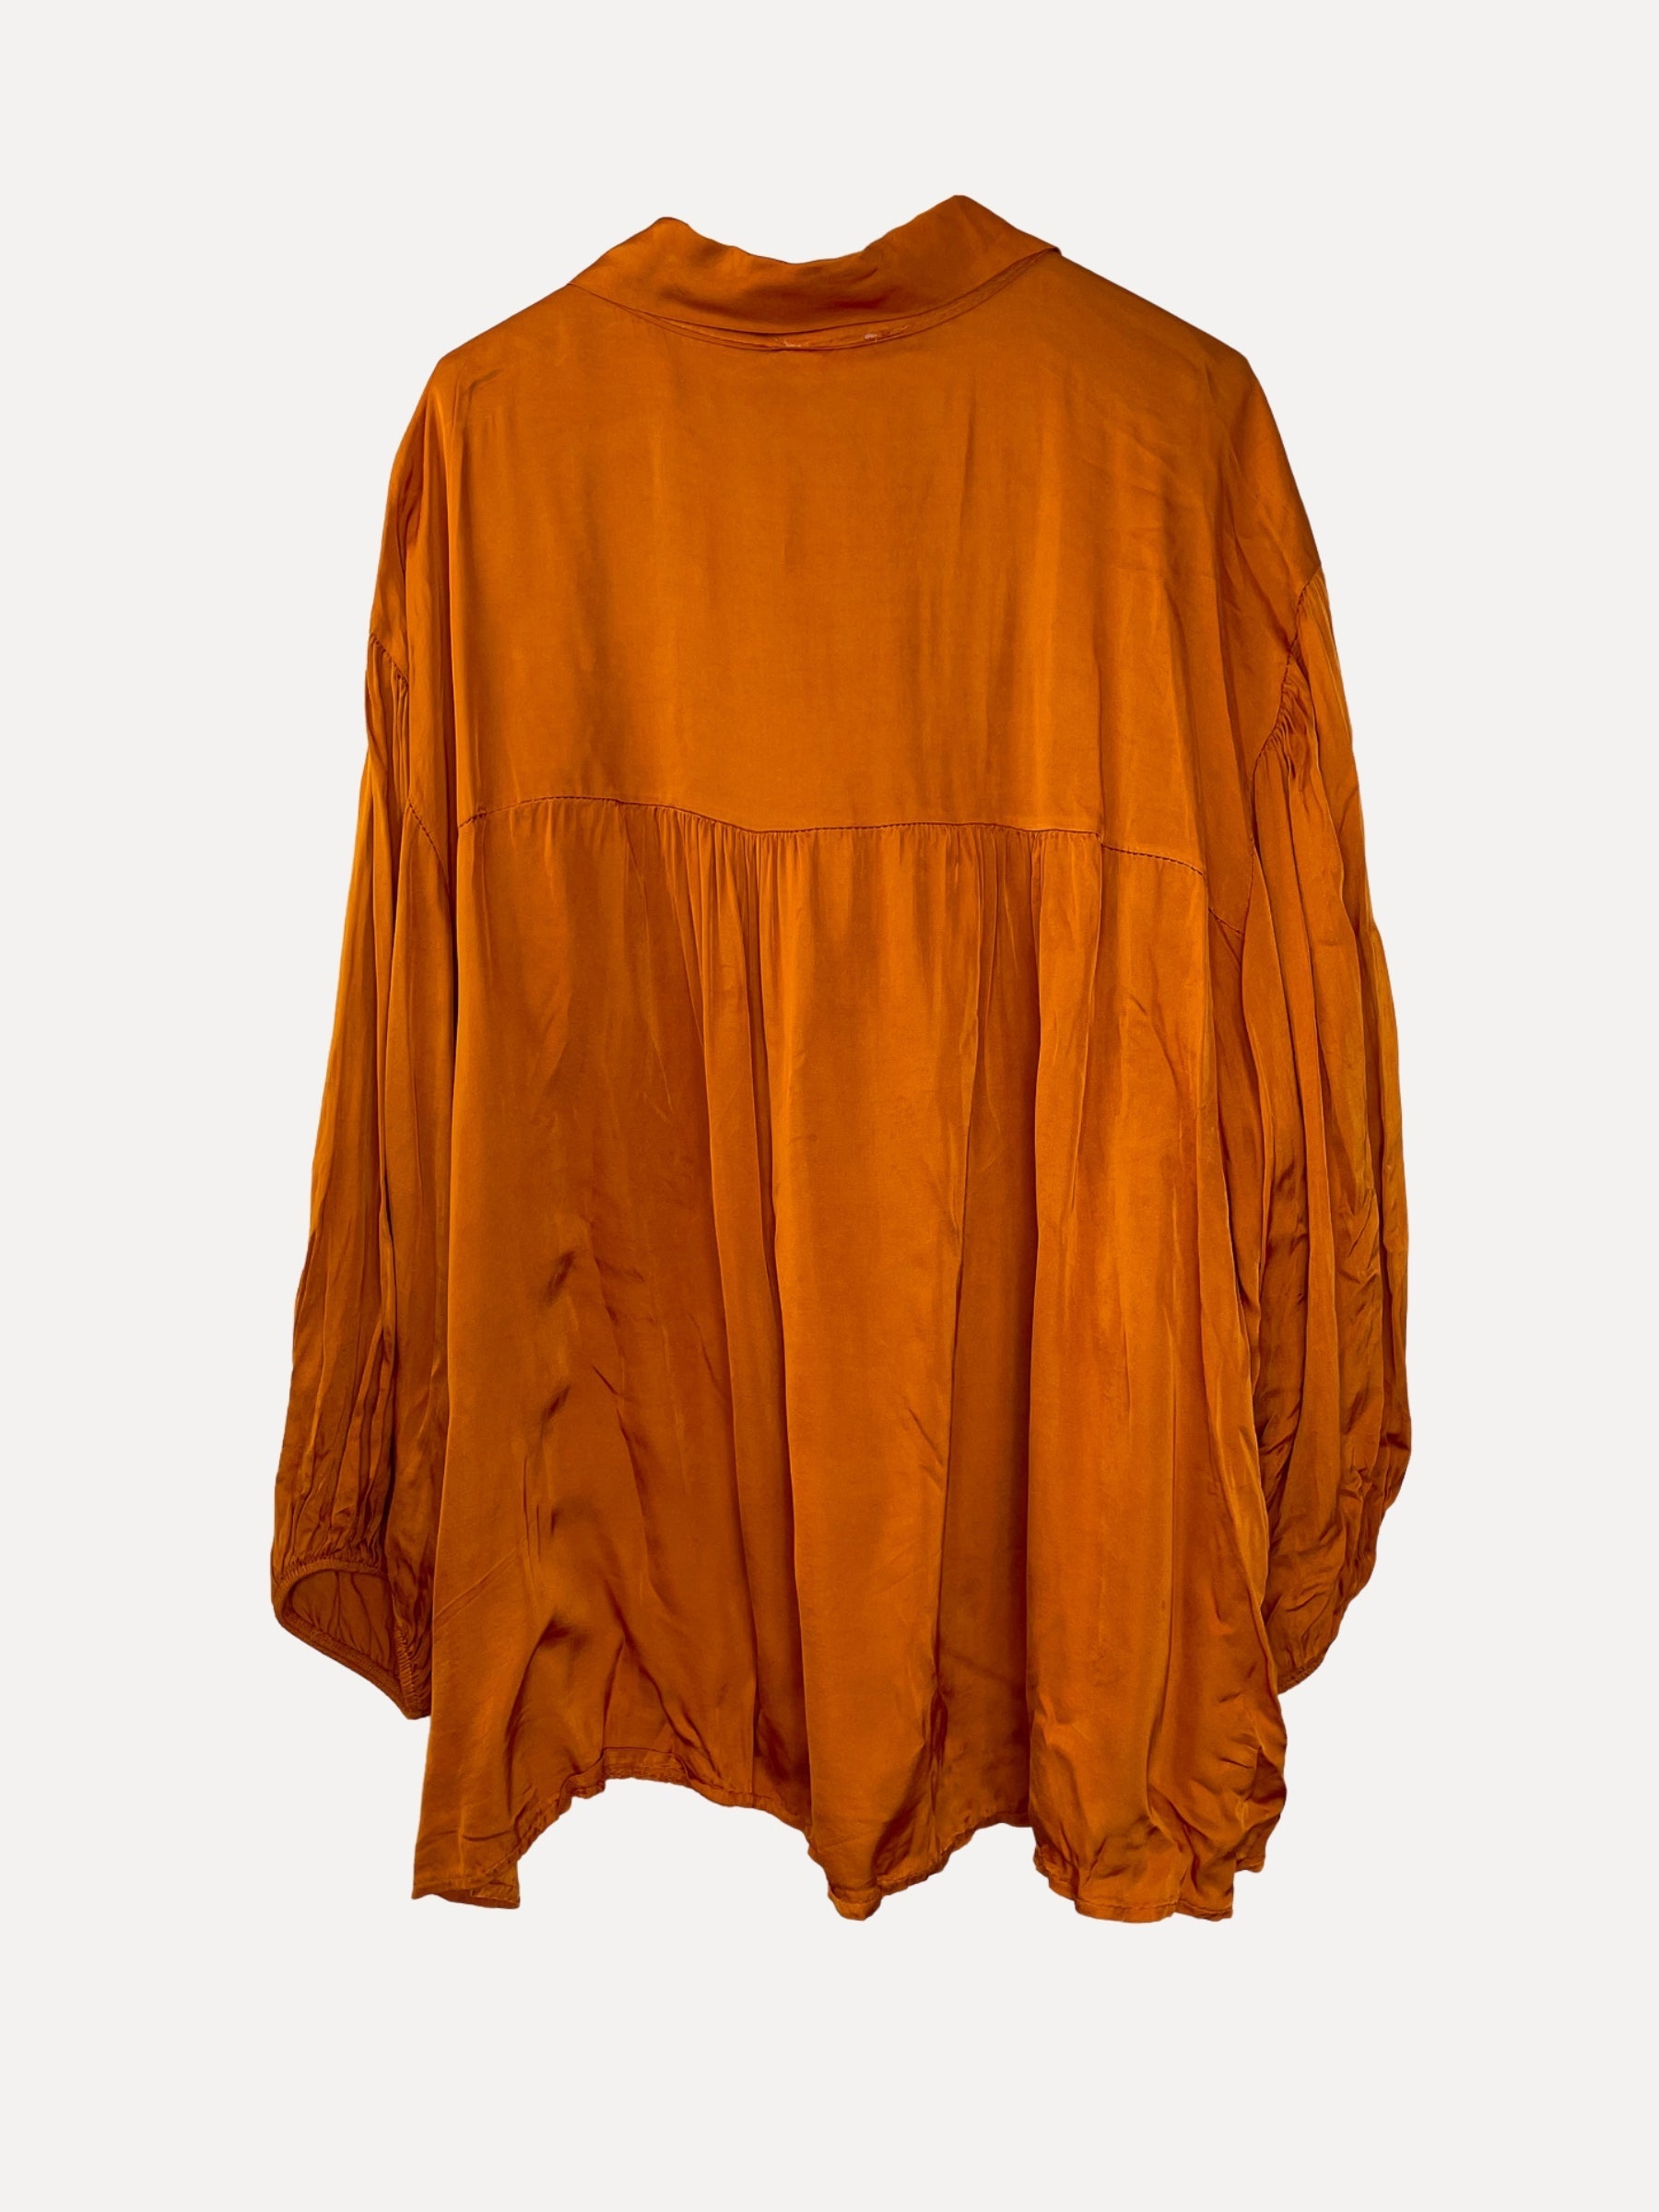 HILMA Shirt, Orange